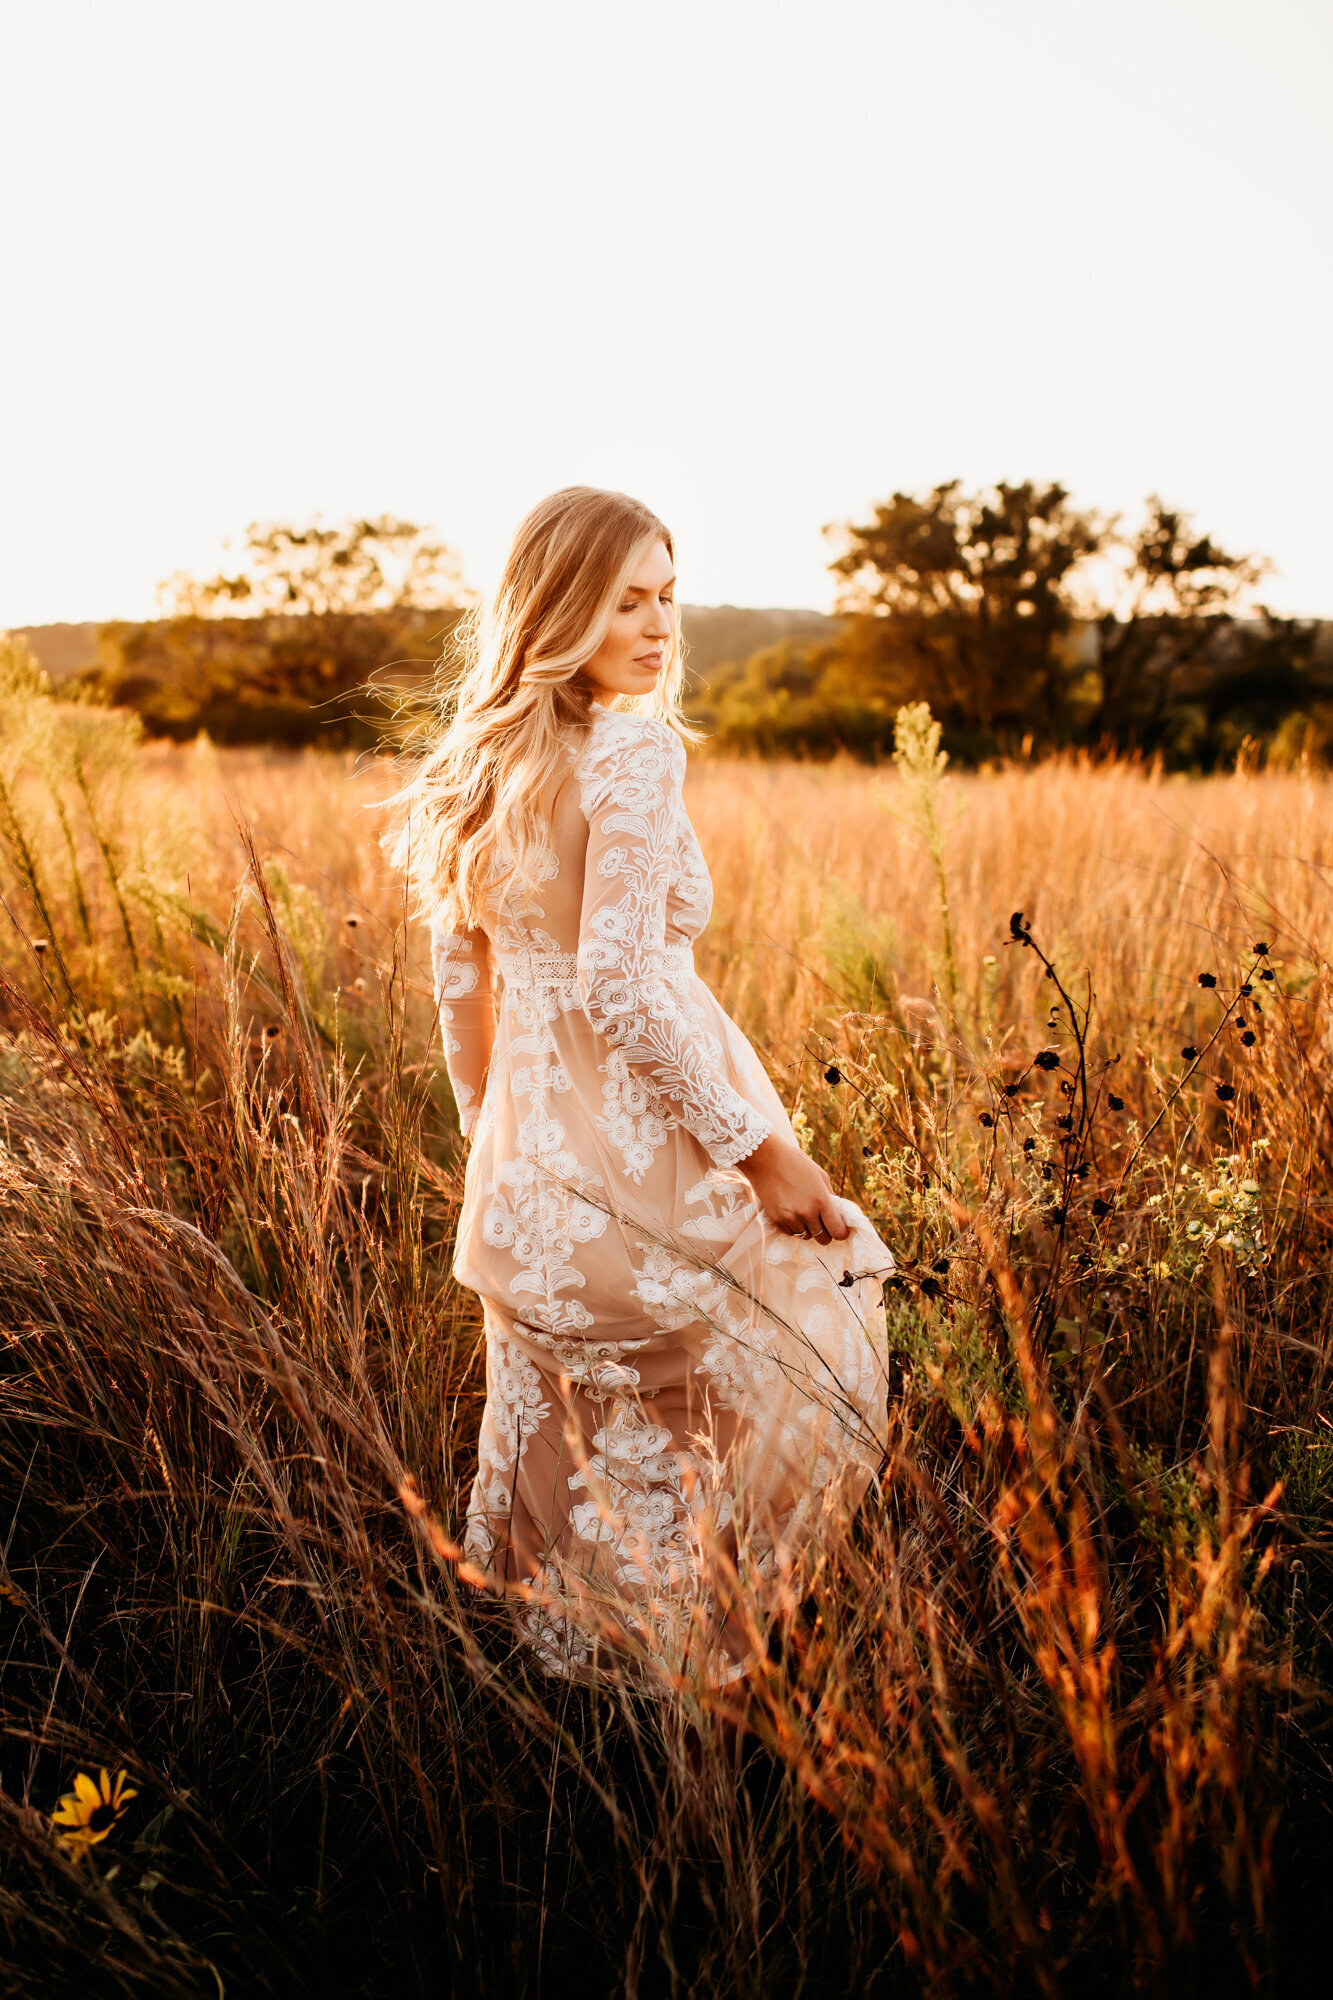 Branding Photographer, a woman holds her dress as she walks through dry grass